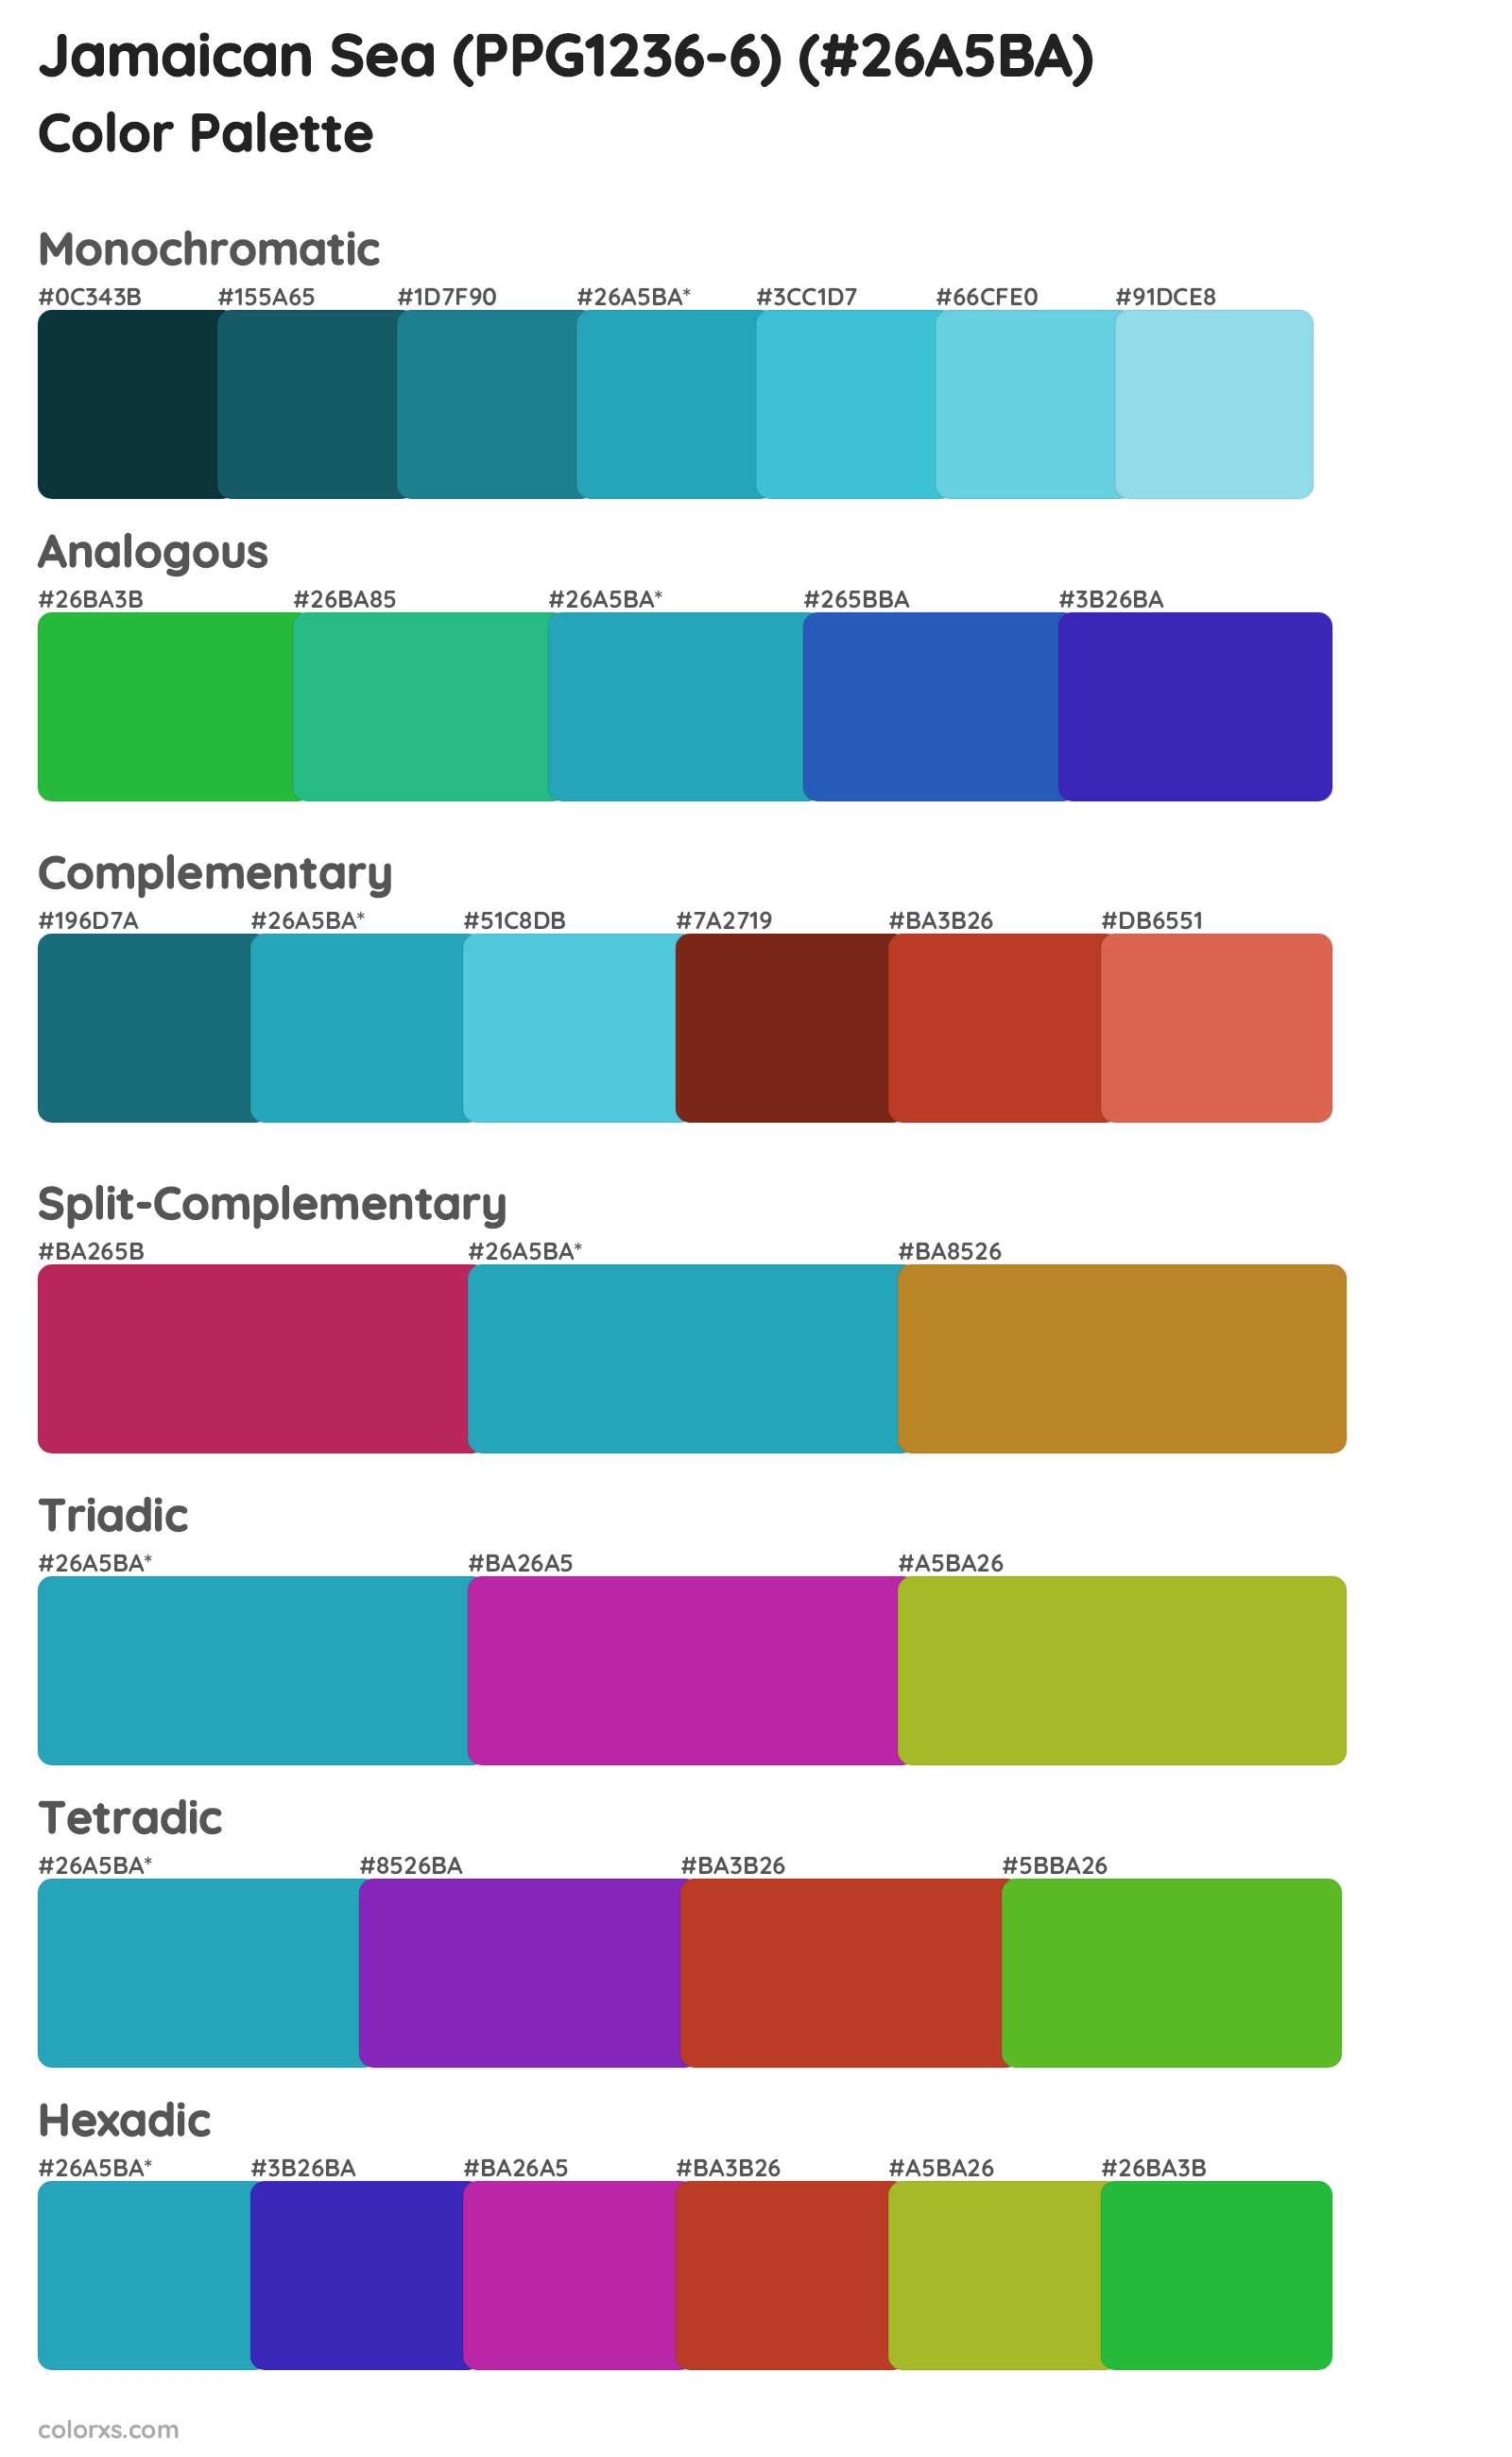 Jamaican Sea (PPG1236-6) Color Scheme Palettes